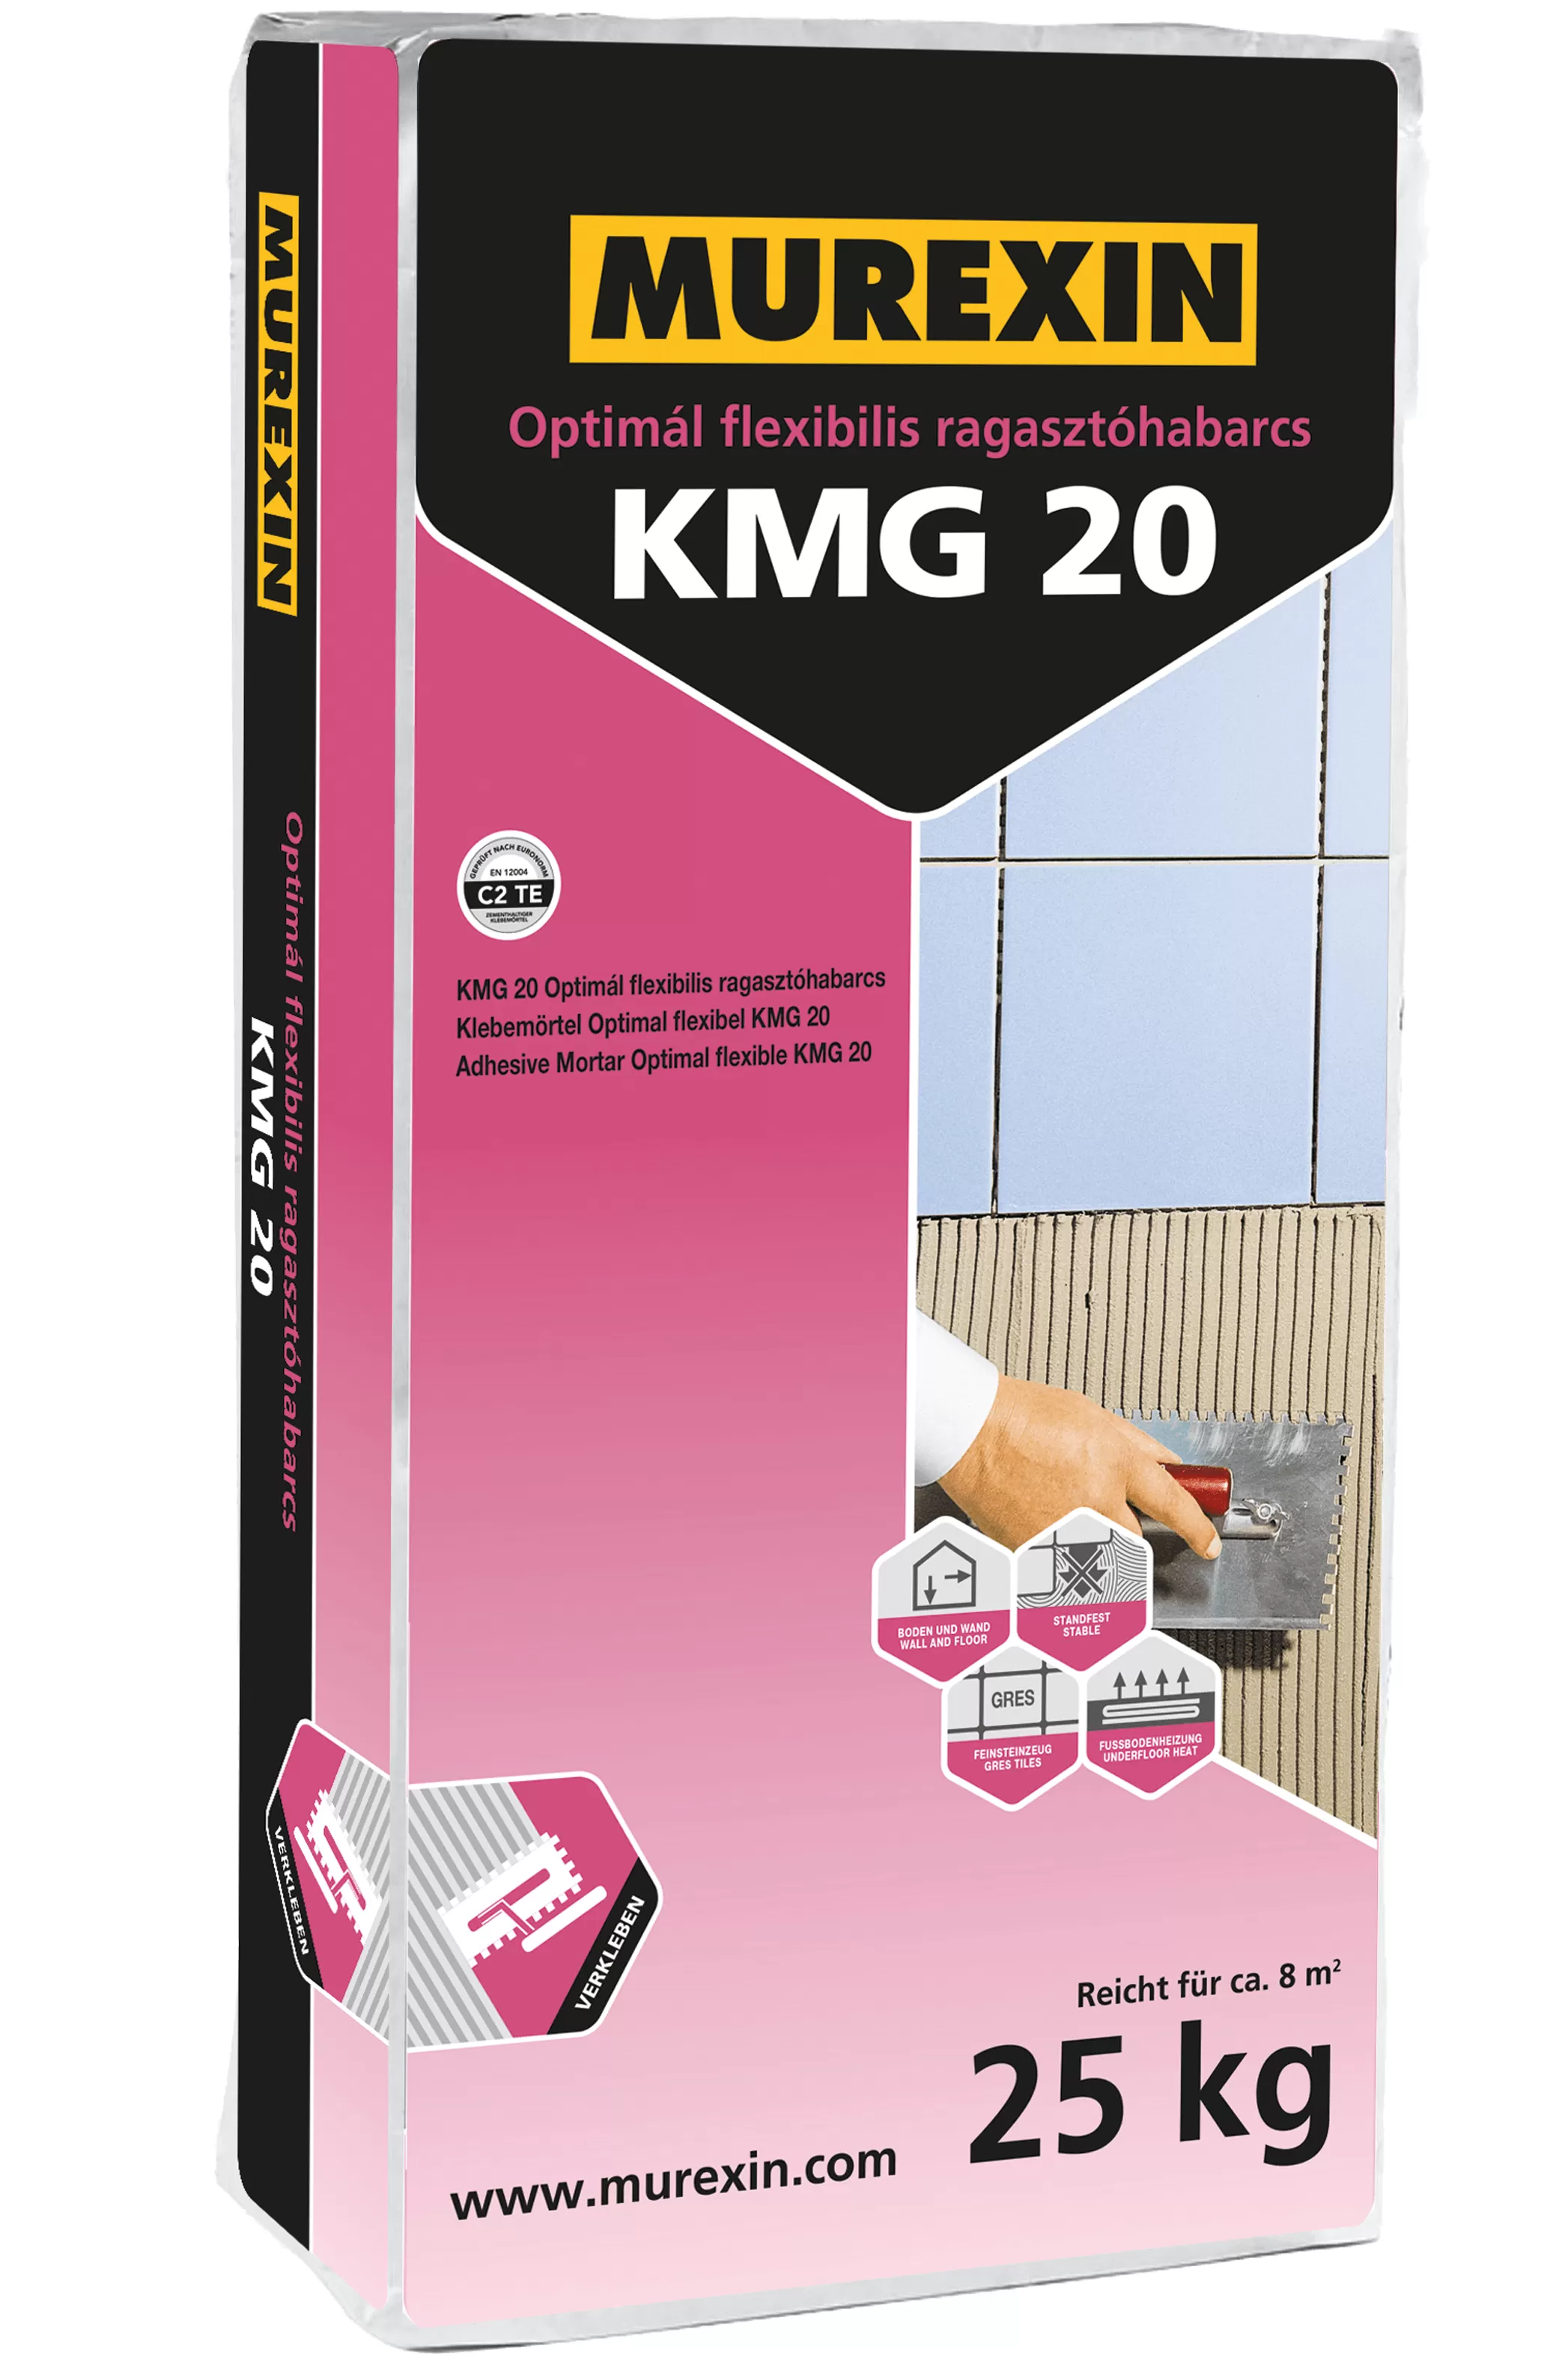 Murexin KMG 20 Optimál flexibilis ragasztóhabarcs